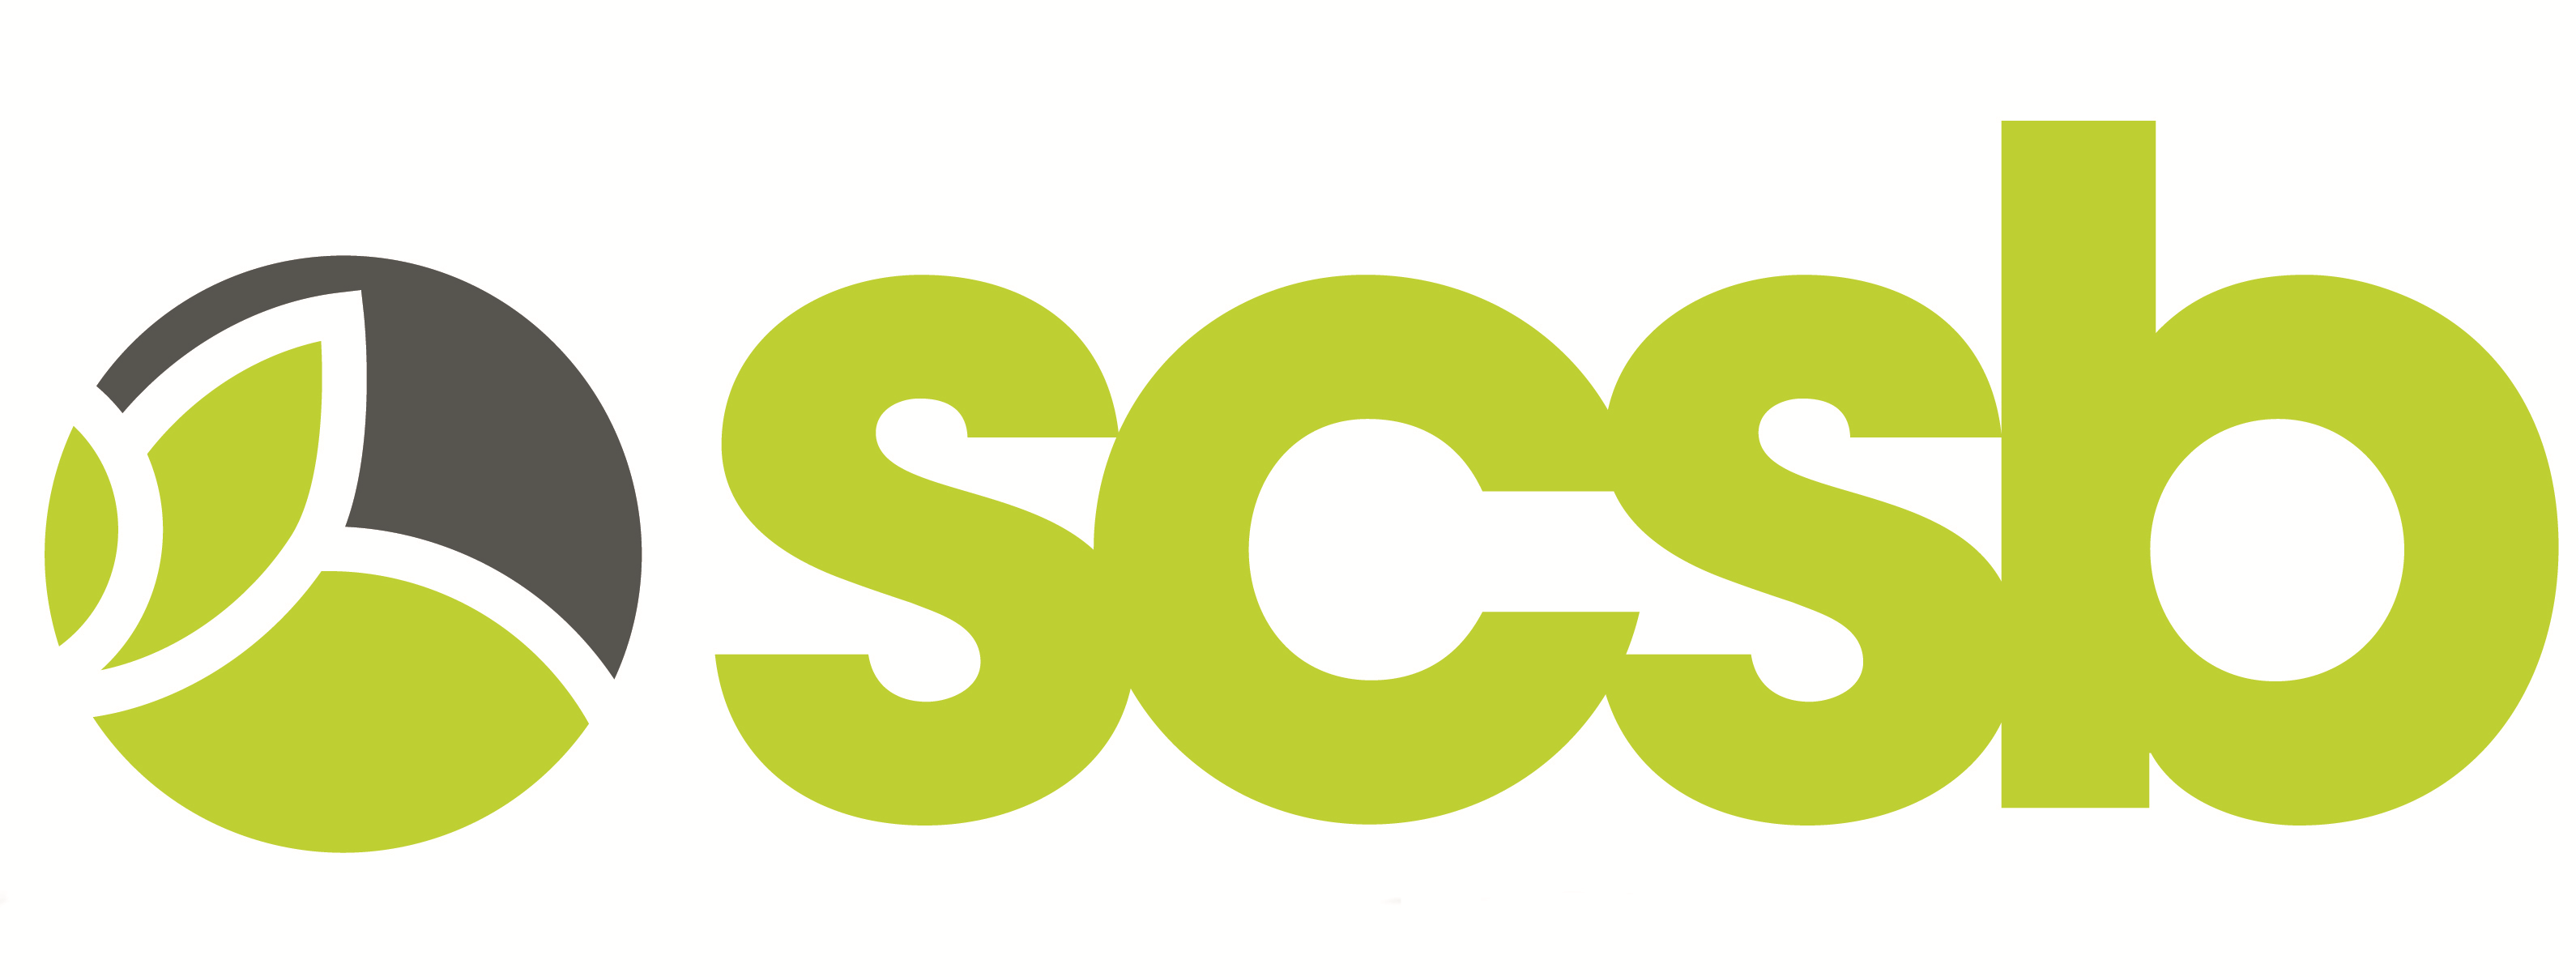 SCSB logo